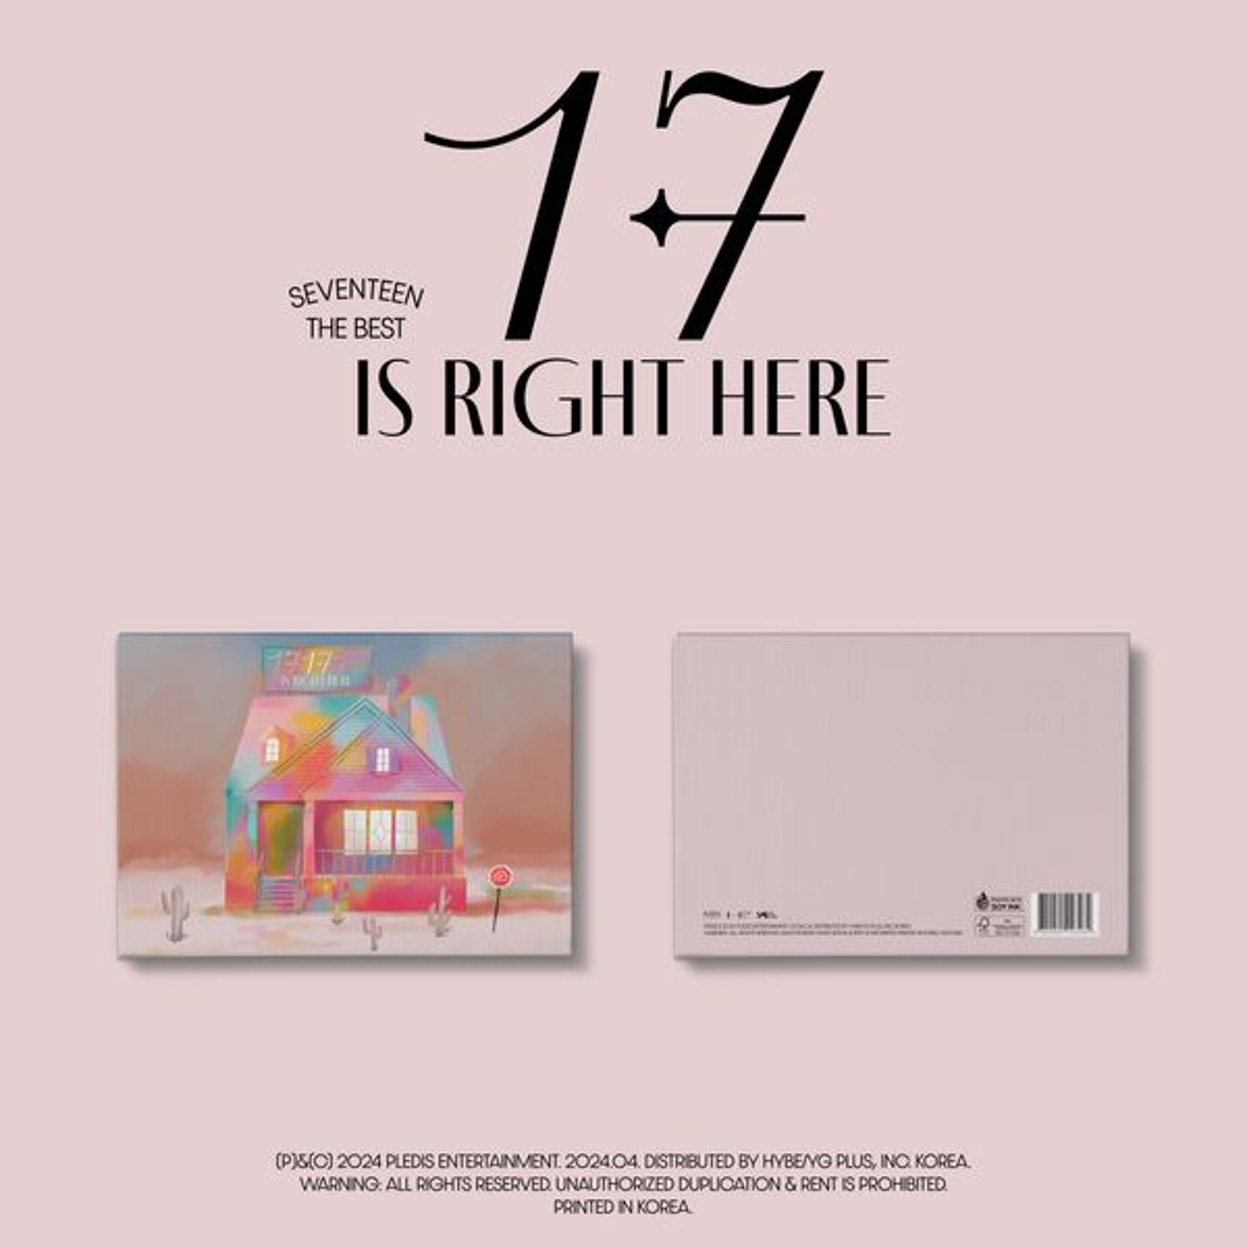 세븐틴 (SEVENTEEN) - 베스트 앨범 [17 IS RIGHT HERE] (Deluxe Ver.)